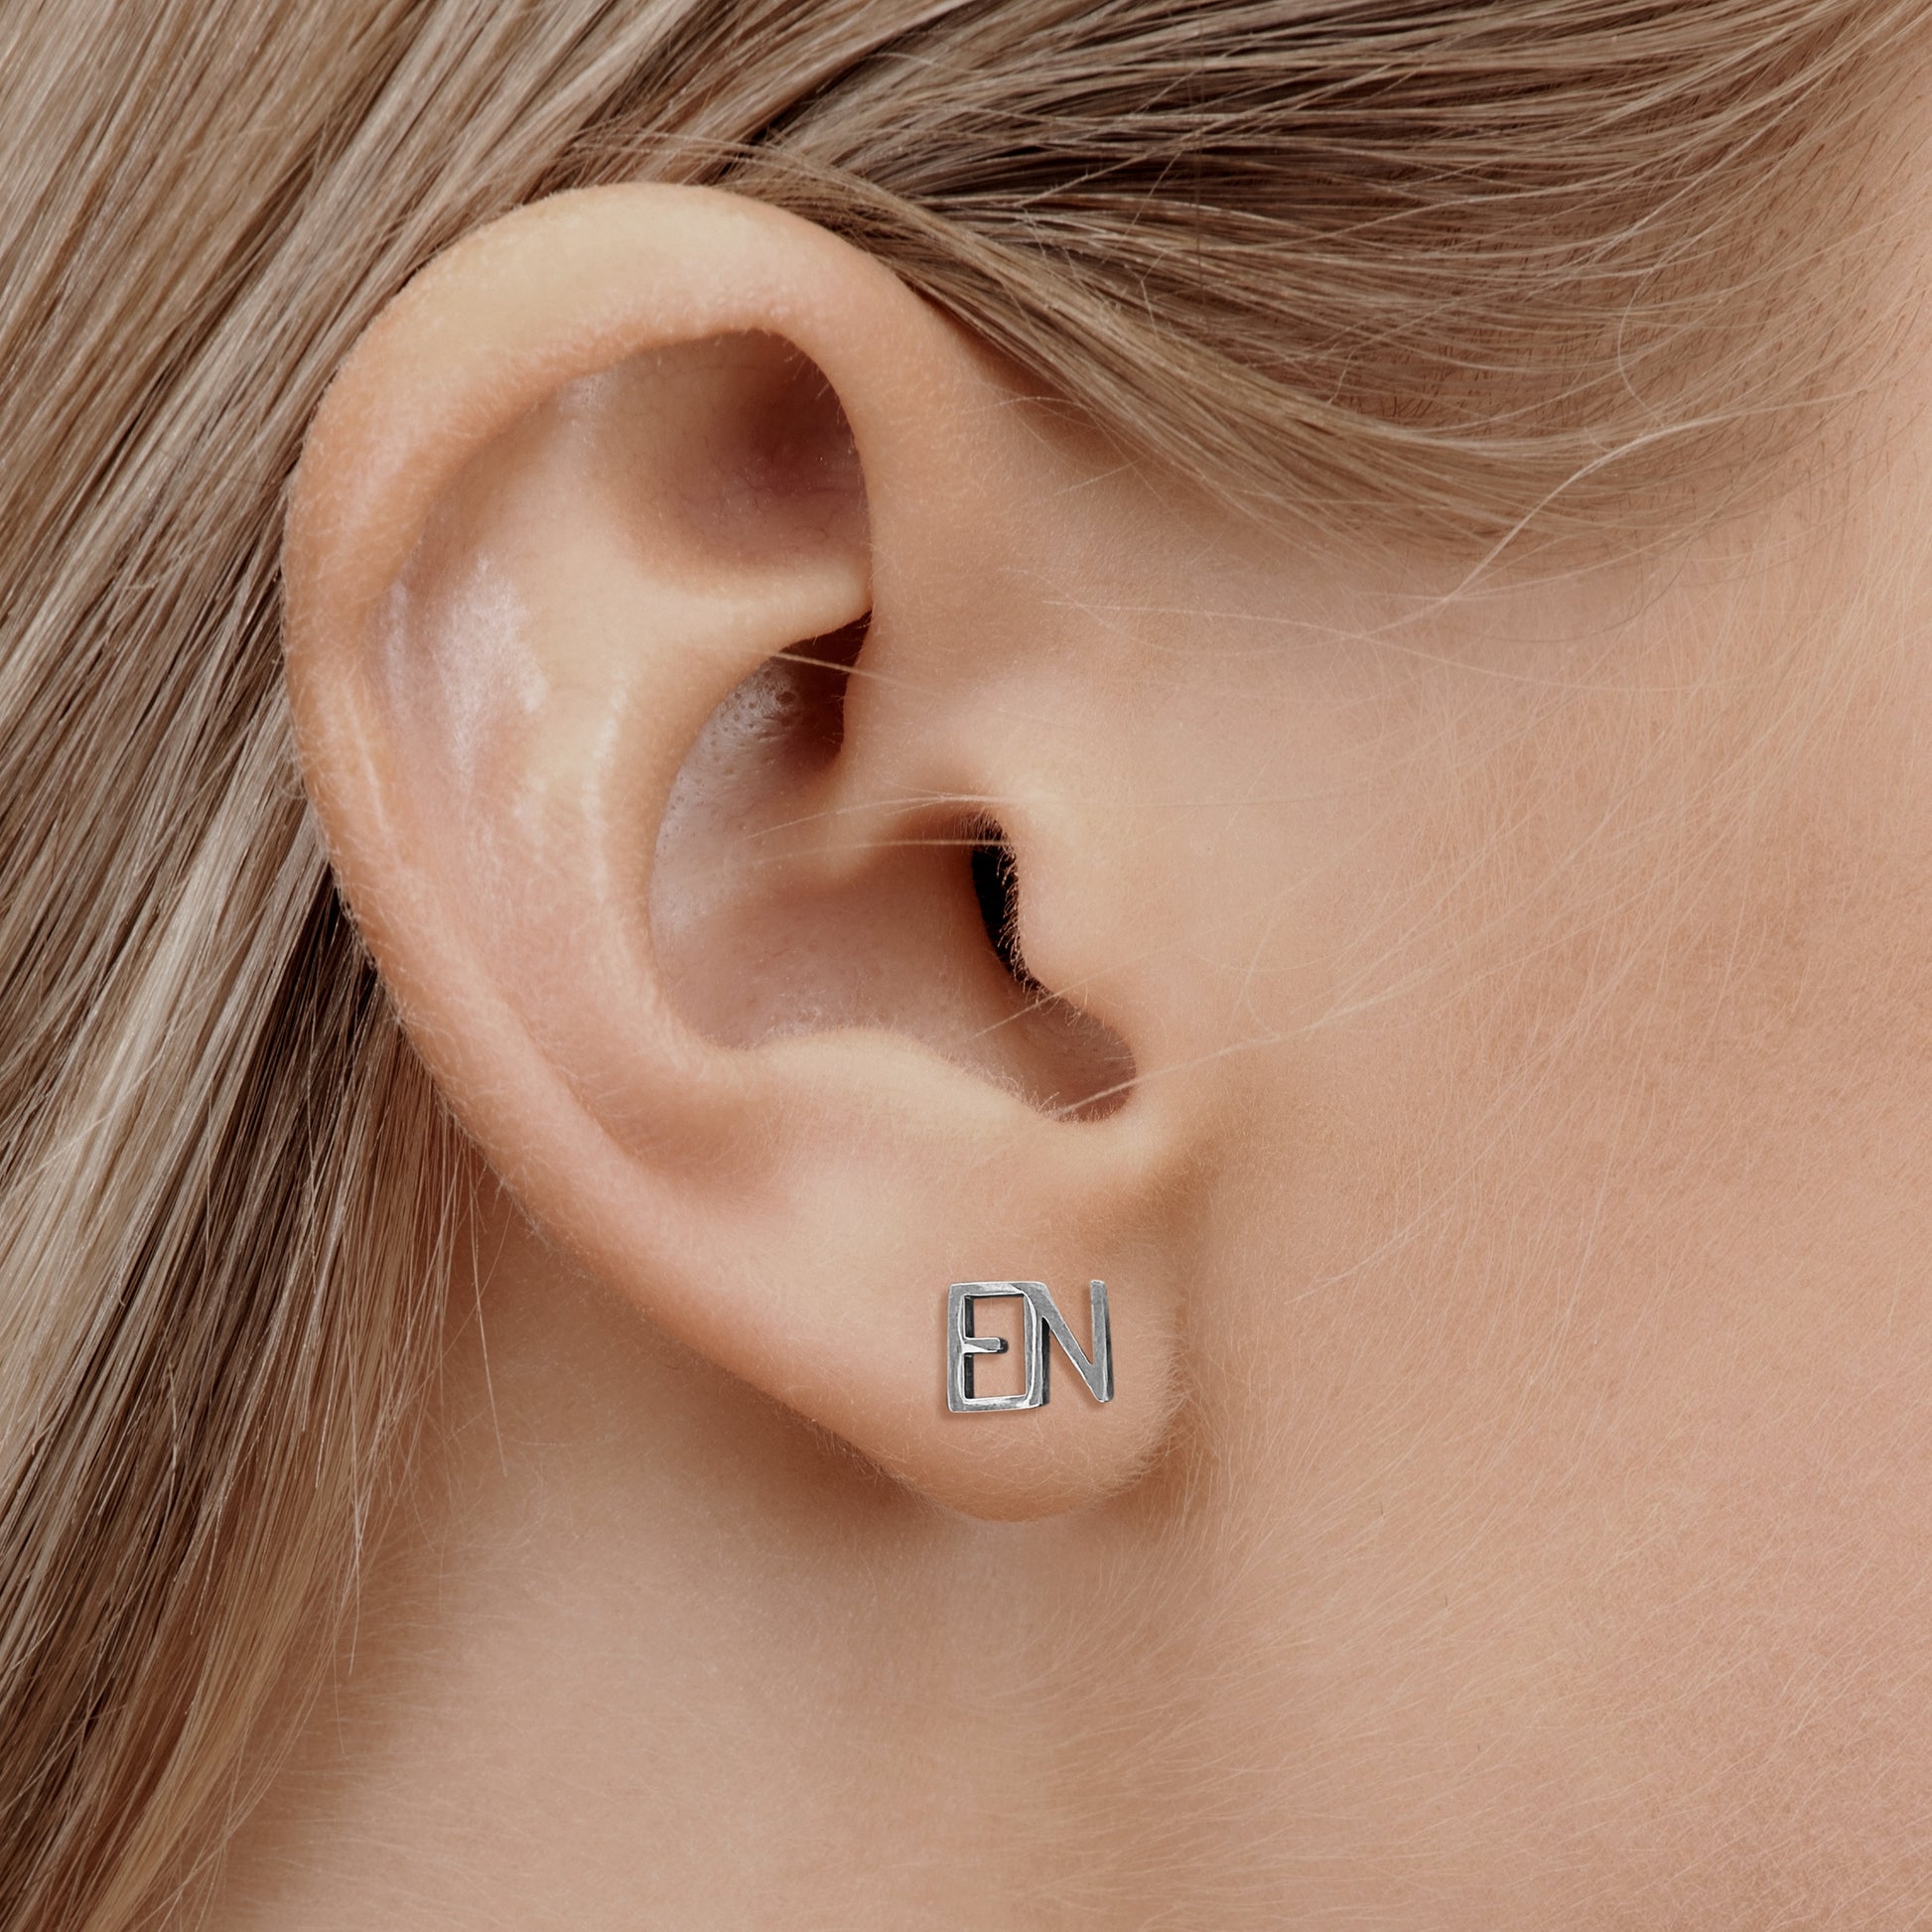 EN Earrings for nurses in silver